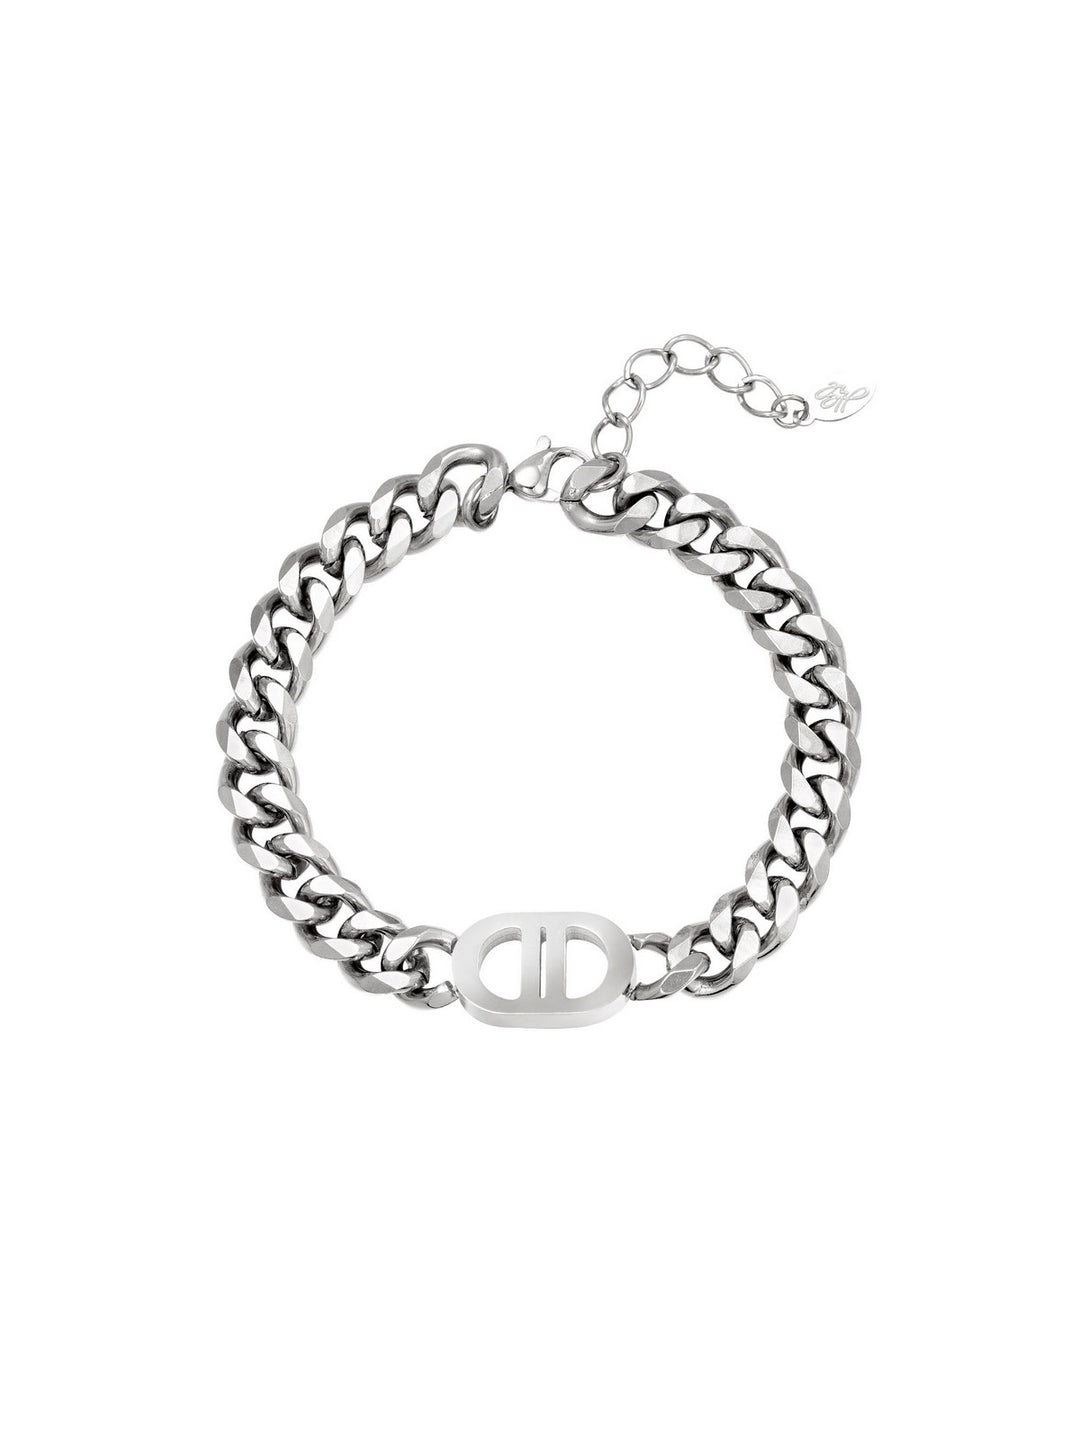 Pretty Chain Bracelet Silver